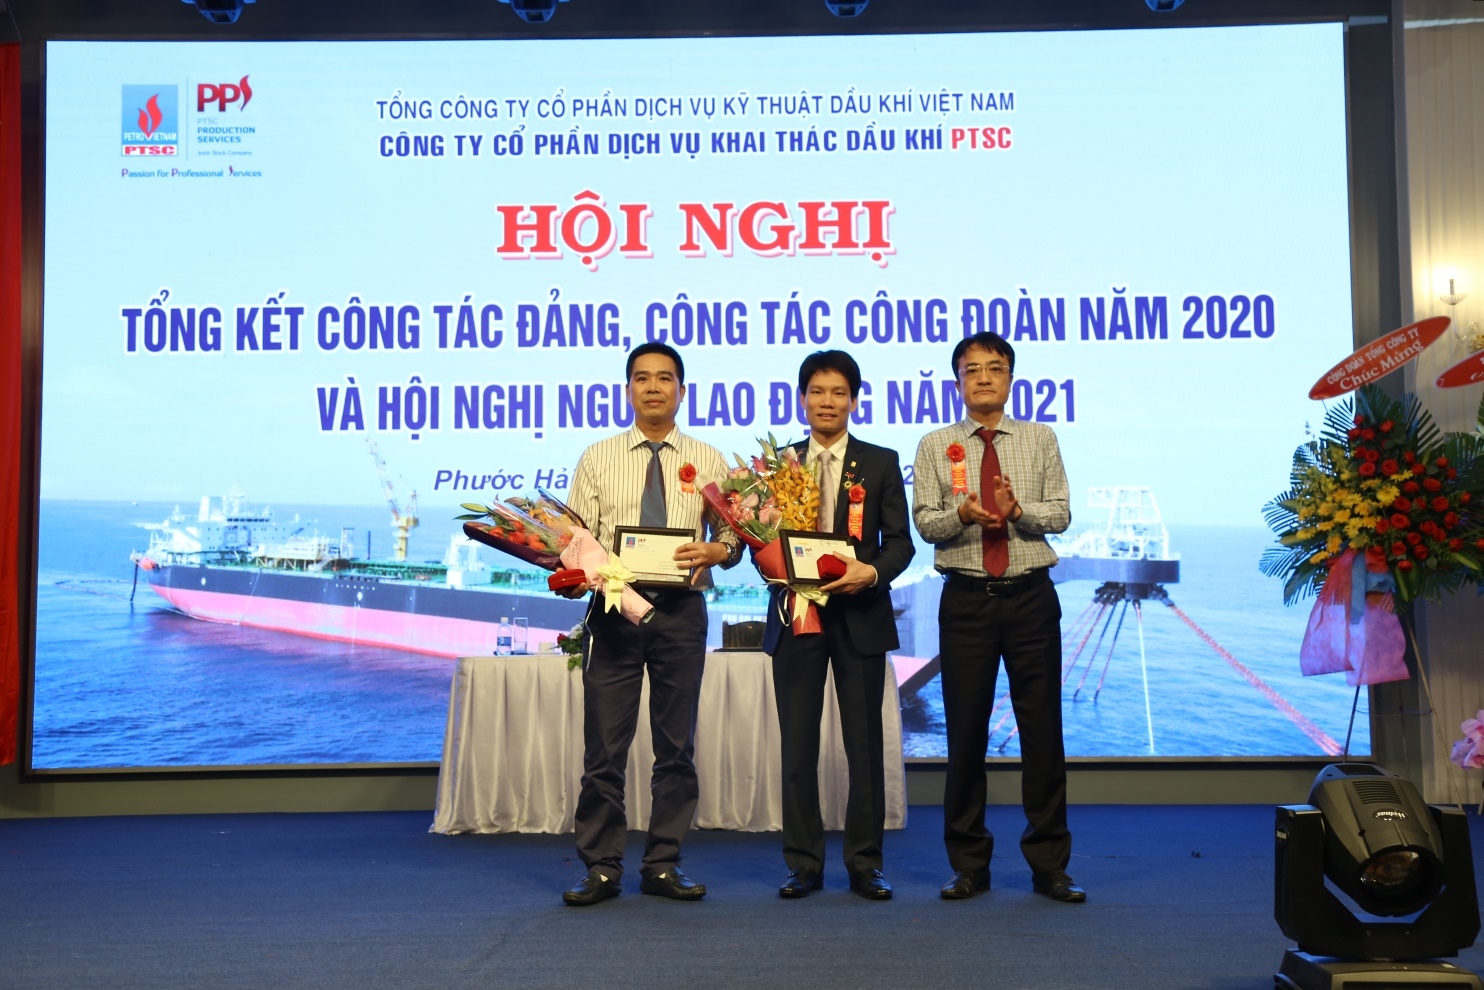 Đồng chí Phan Thanh Tùng – Bí thư Đảng ủy, Chủ tịch HĐQT Tổng công ty trao tặng kỷ niệm chương vì sự nghiệp dầu khí cho 2 cá nhân.